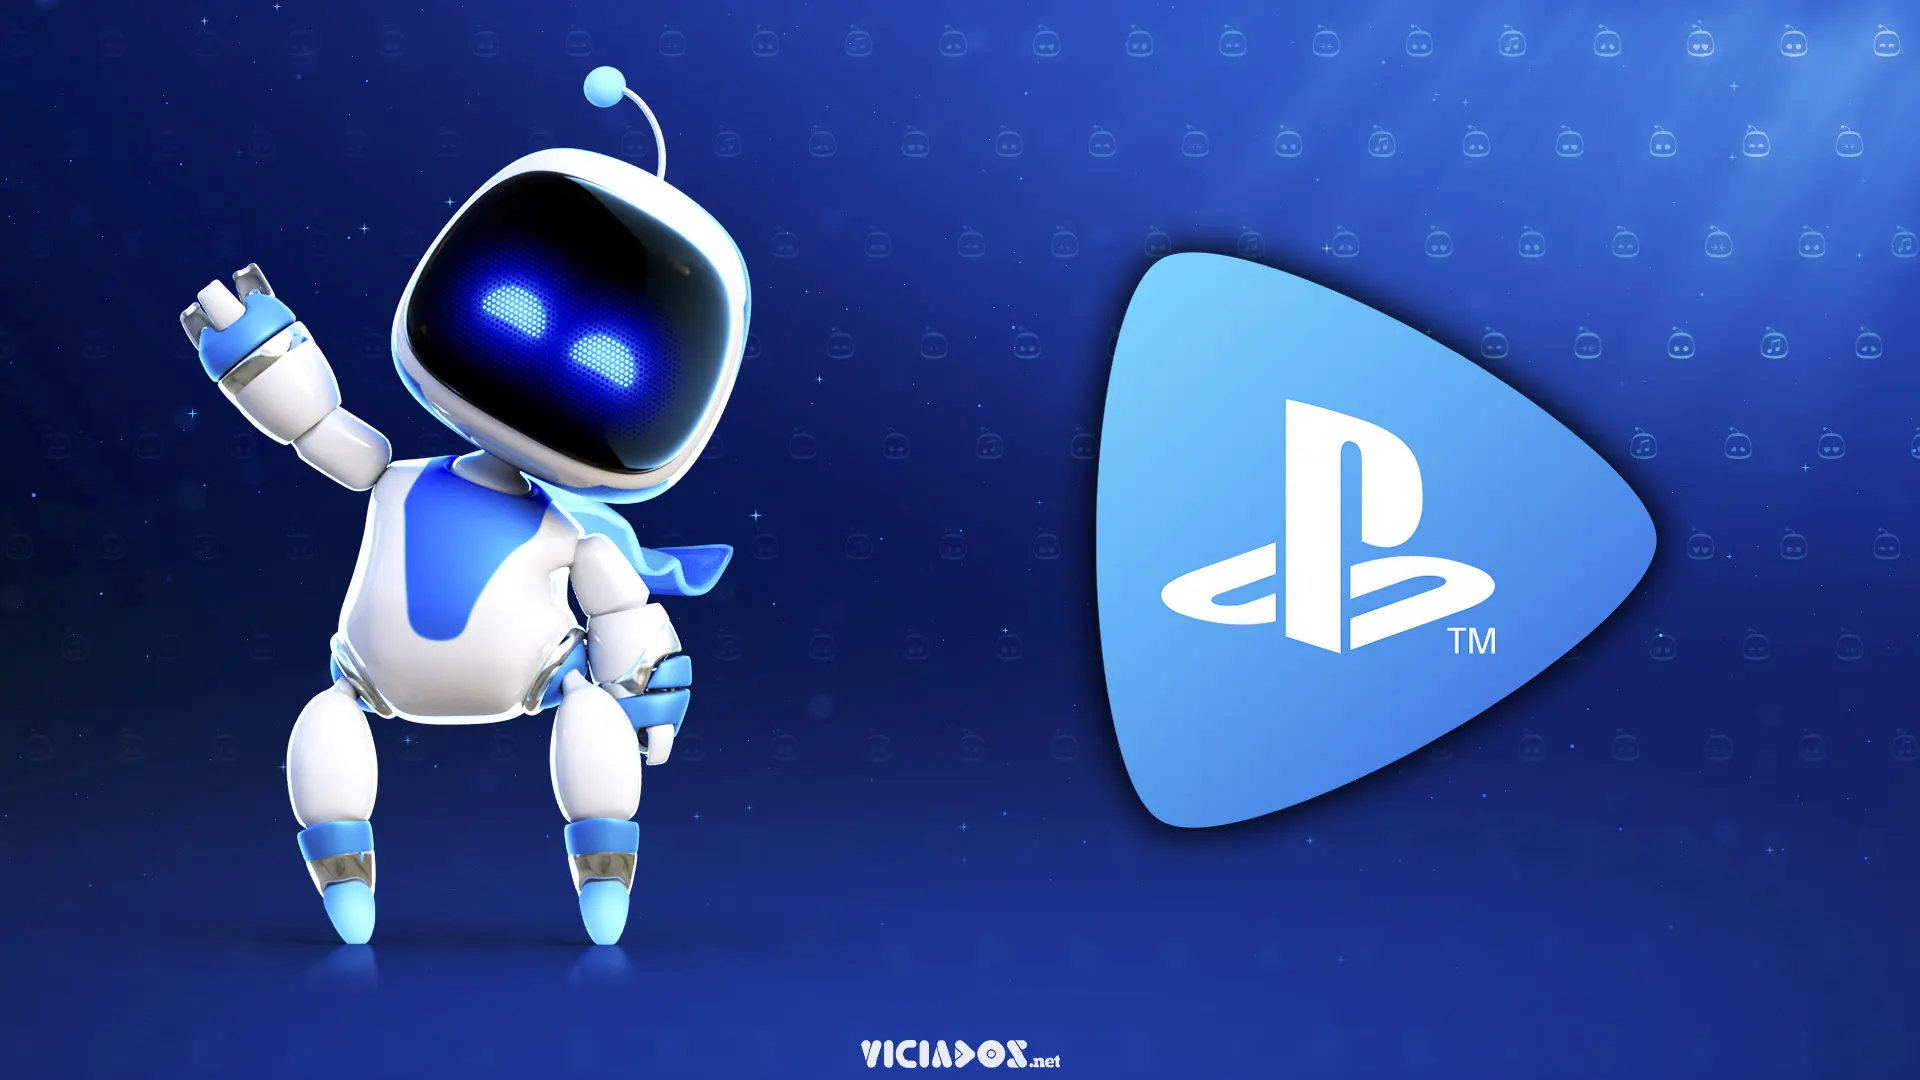 Novos jogos da Sony chegarão aos PCs; Vazam imagens de dois novos títulos! 2023 Viciados